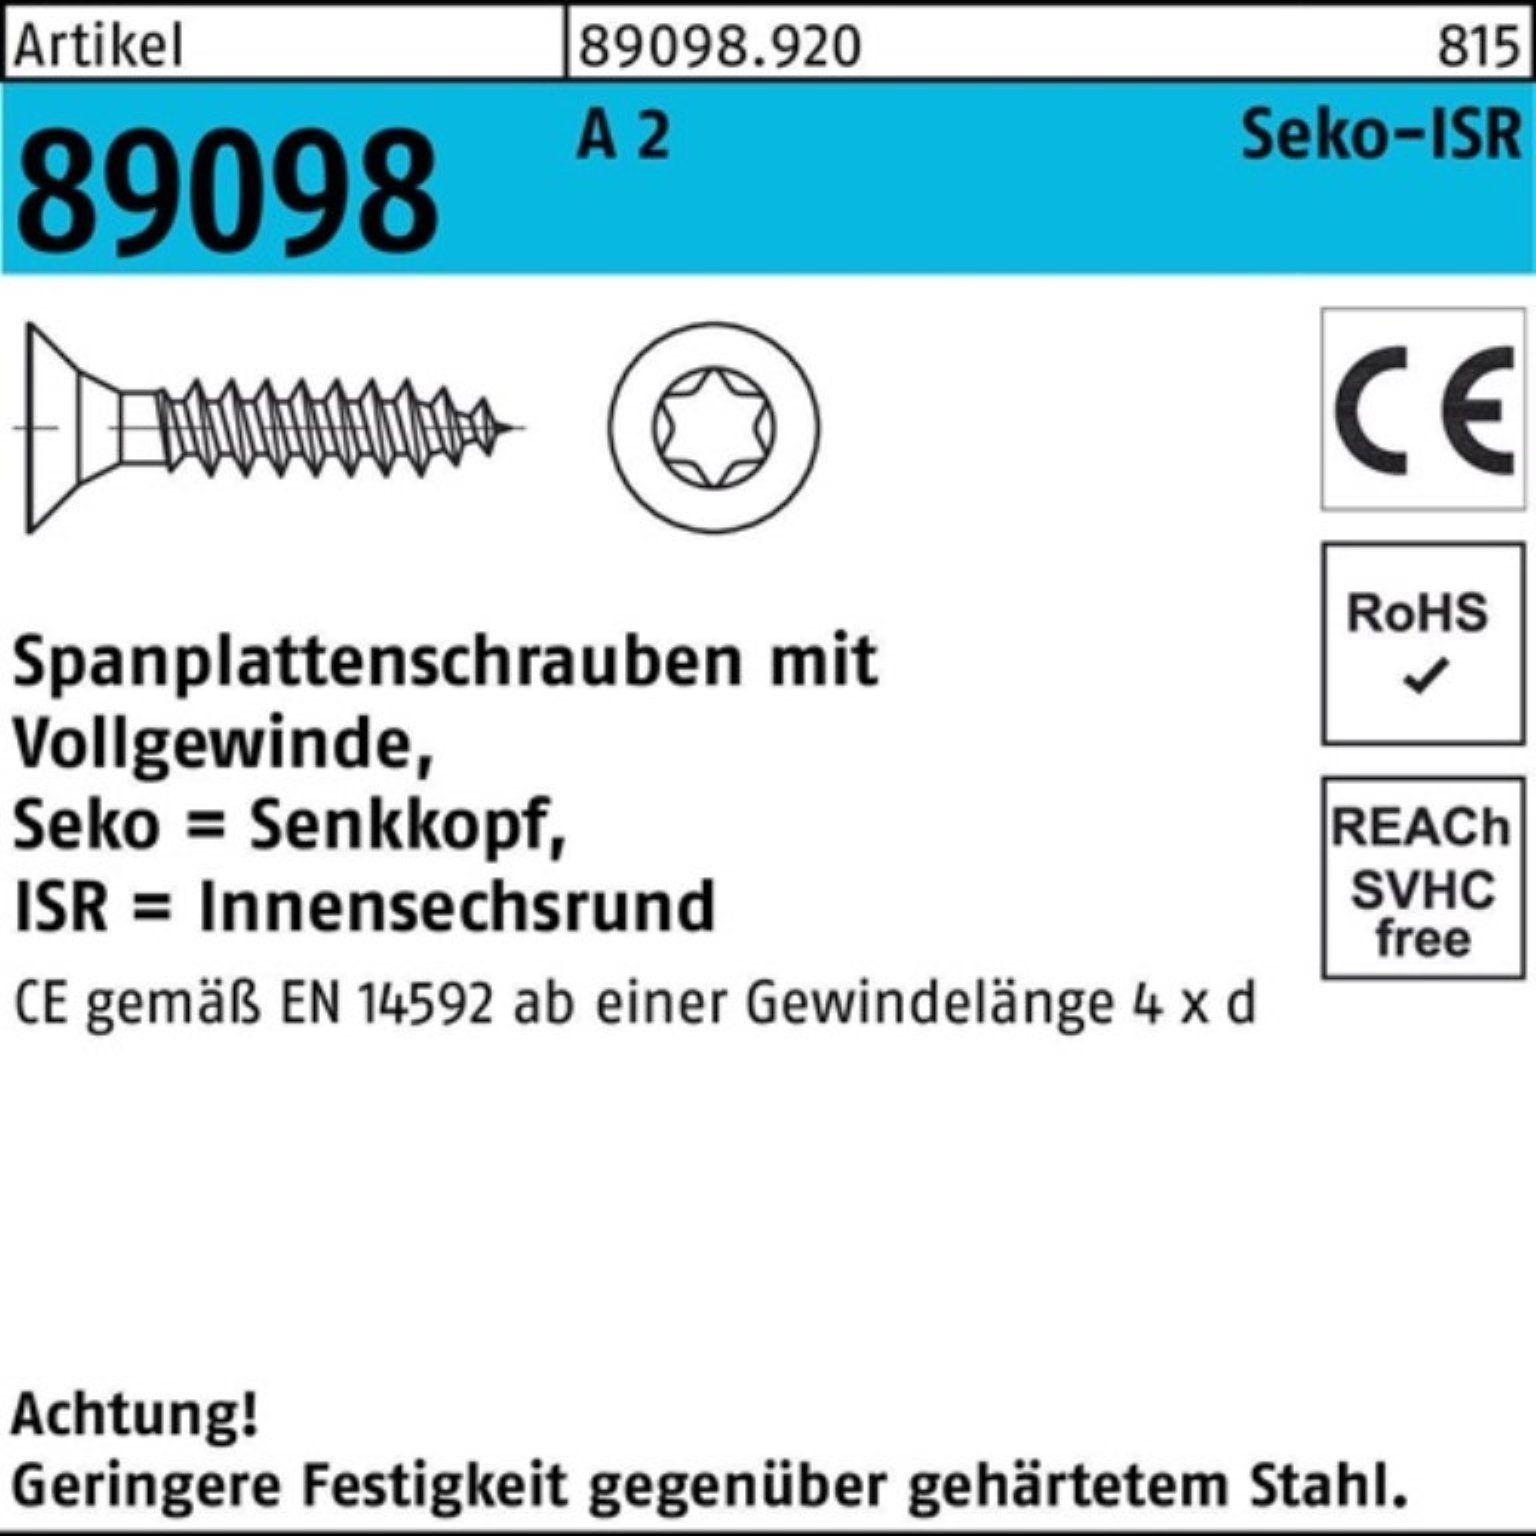 Reyher Spanplattenschraube 1000er Pack Spanplattenschraube R 89098 SEKO ISR VG 3x 12-T10 A 2 1000